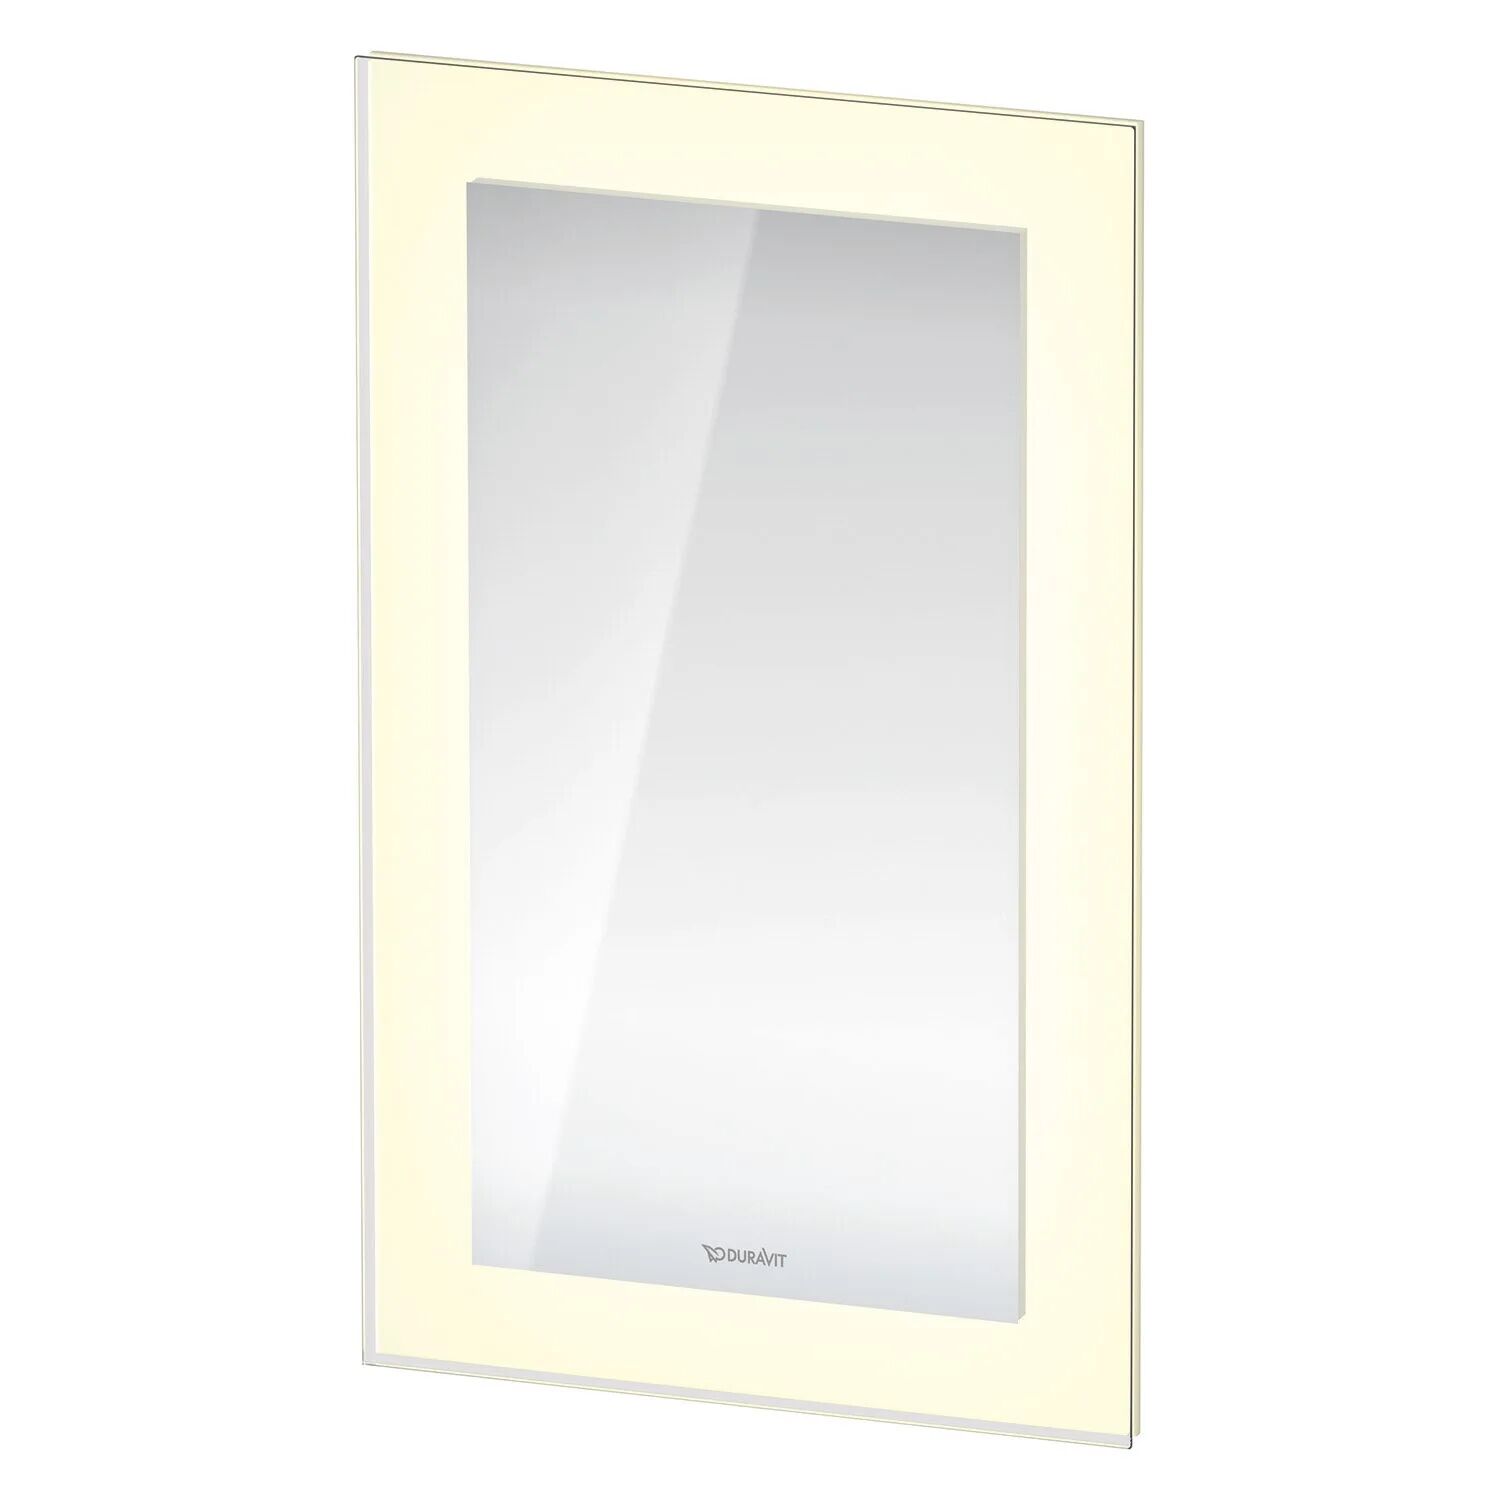 Duravit White Tulip Spiegel 45 x75 cm, App-Version mit Spiegelheizung White Tulip B: 45 T: 5 H: 75 cm weiß matt WT706000000